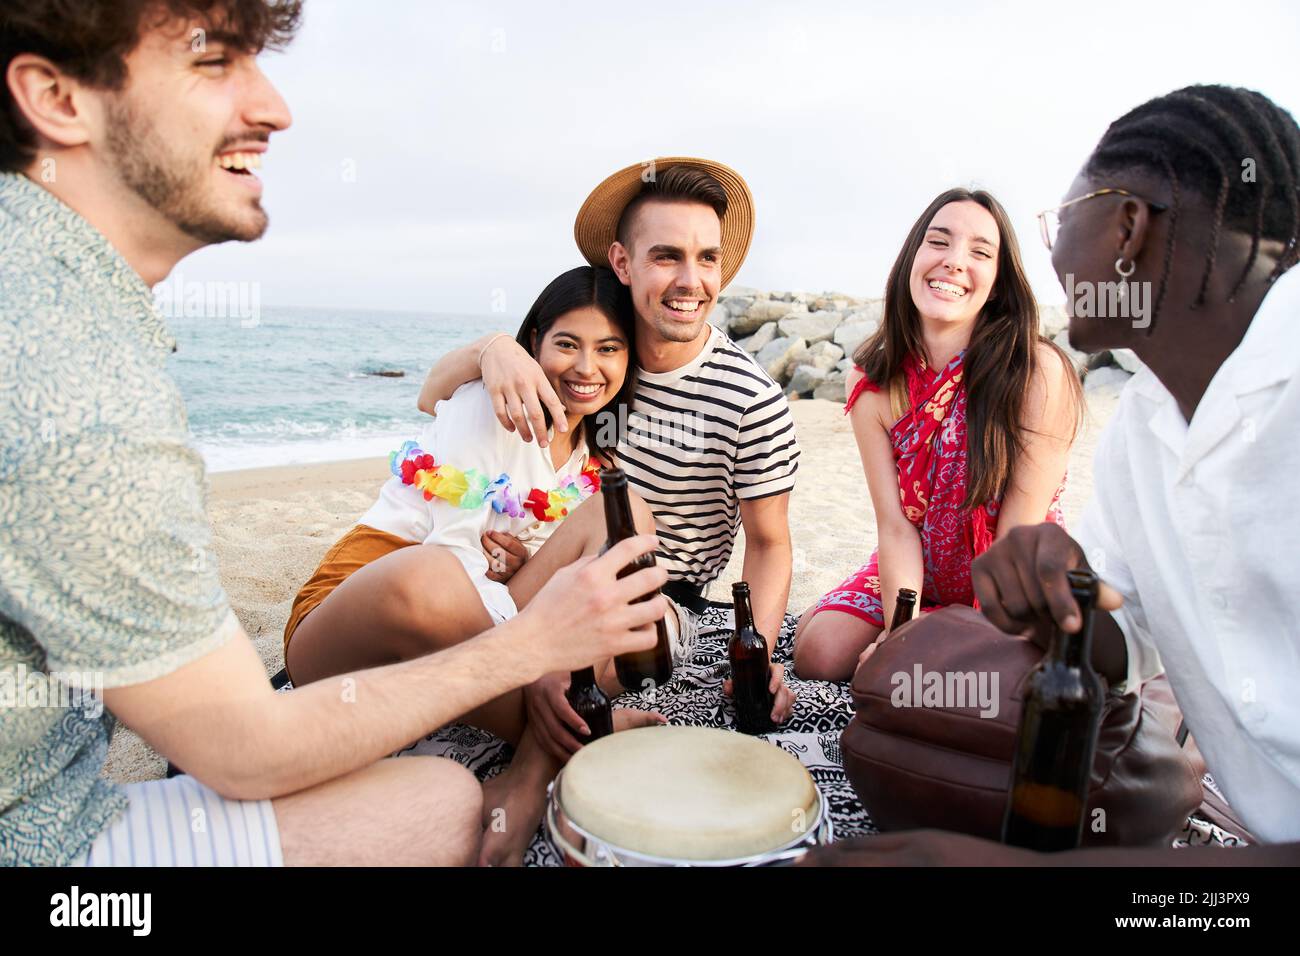 People Celebration Beach Party Summer Holiday Concept. Cinque amici belli brulicano e bevono birre vicino al mare, godendo il tempo di vacanza ridendo e. Foto Stock